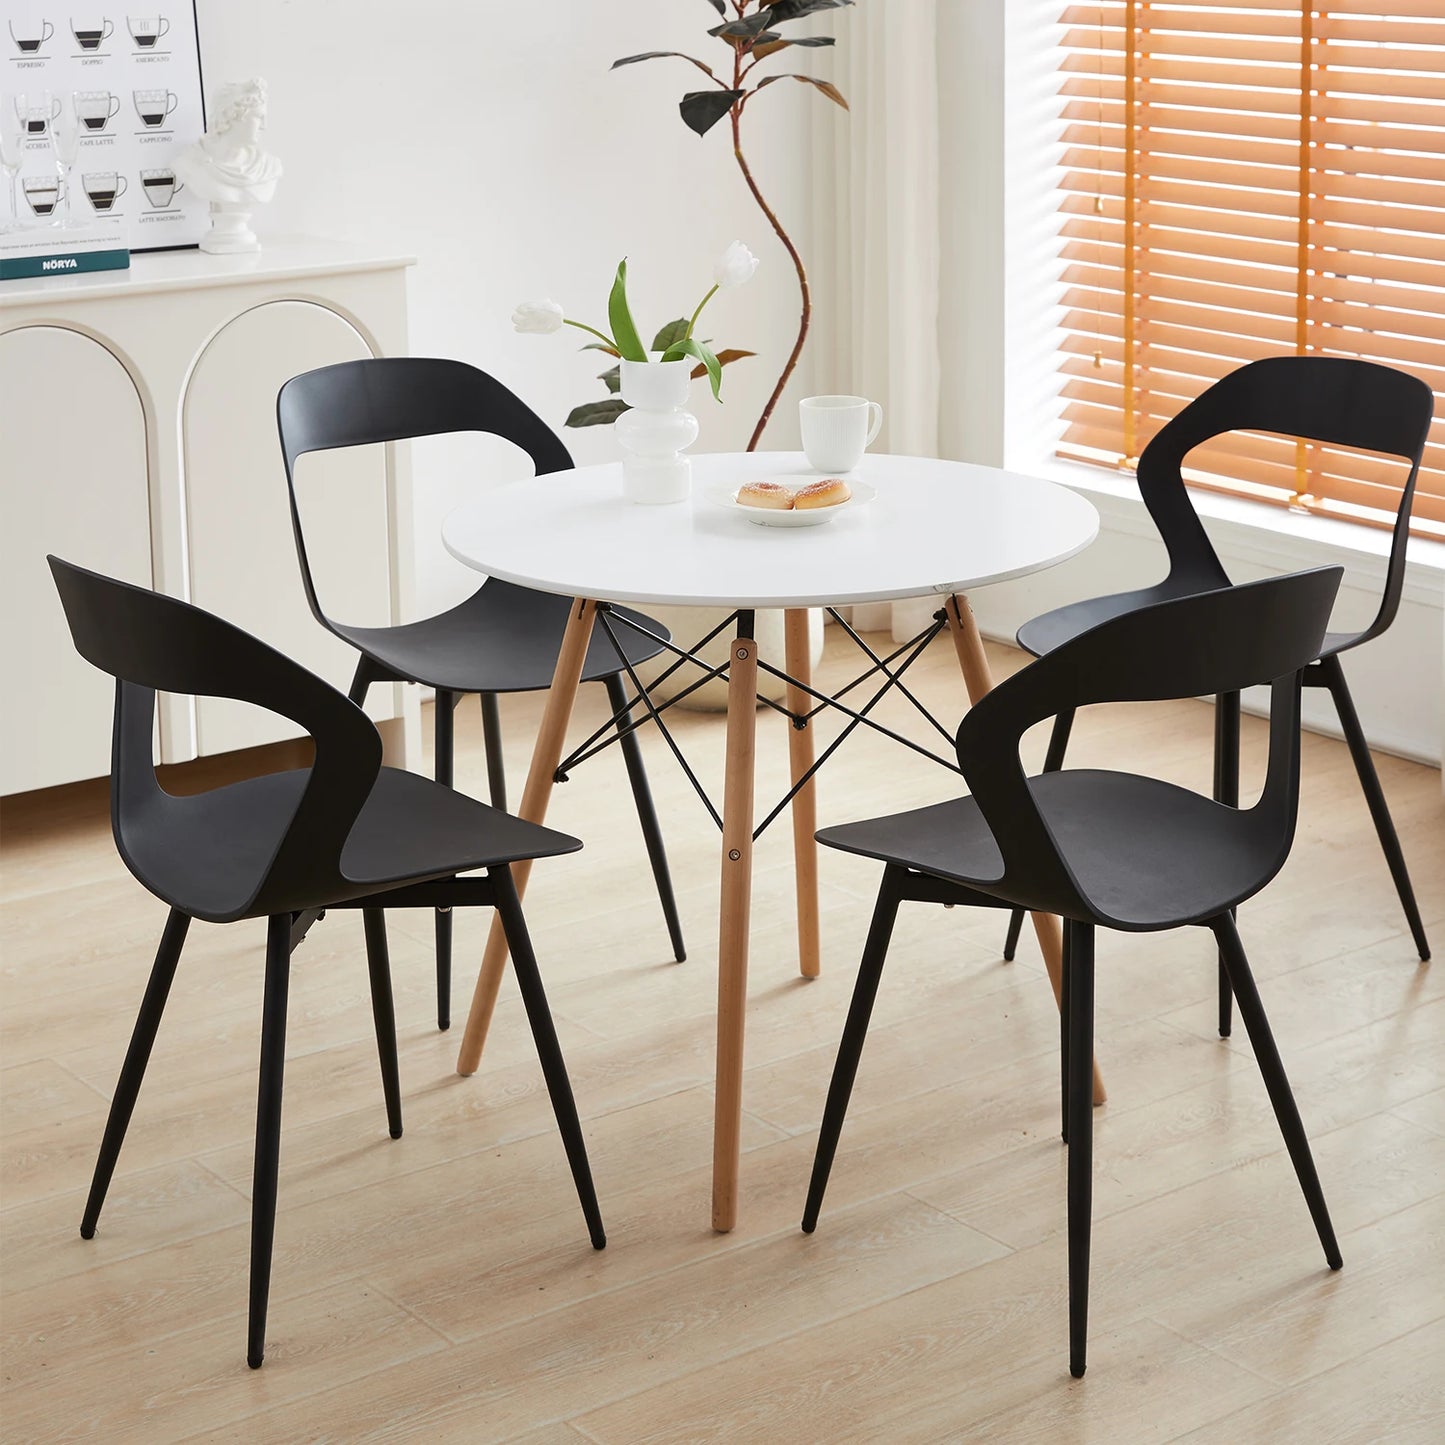 Set van 6 Scandinavische eetkamerstoelen voor eetkamermeubilair. Stoel van Noordse ontwerper met creatief huishoudelijk rugleuning. Wit/Zwart.